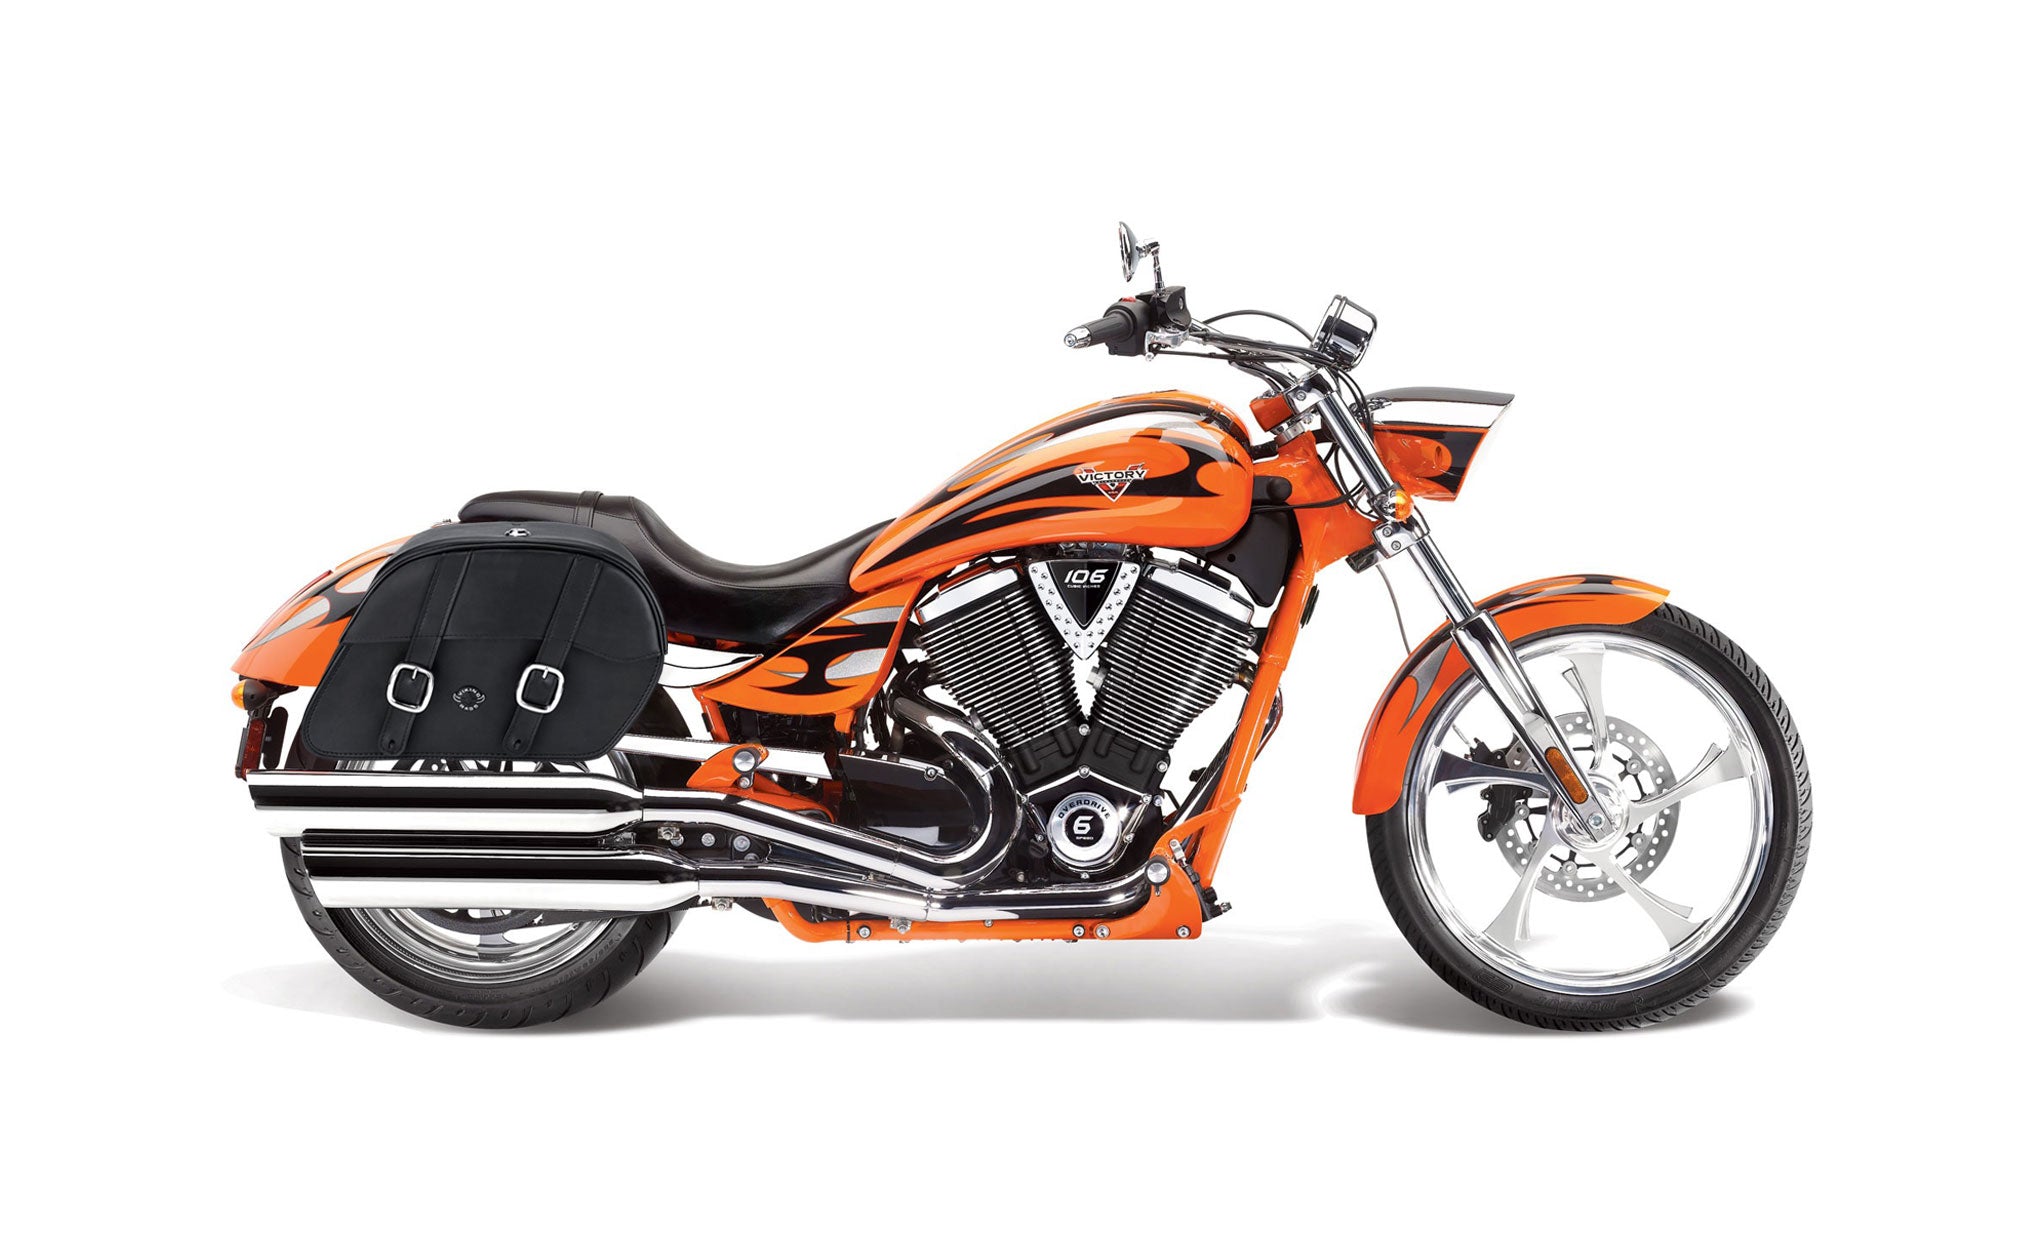 Viking Skarner Large Victory Jackpot Leather Motorcycle Saddlebags on Bike Photo @expand